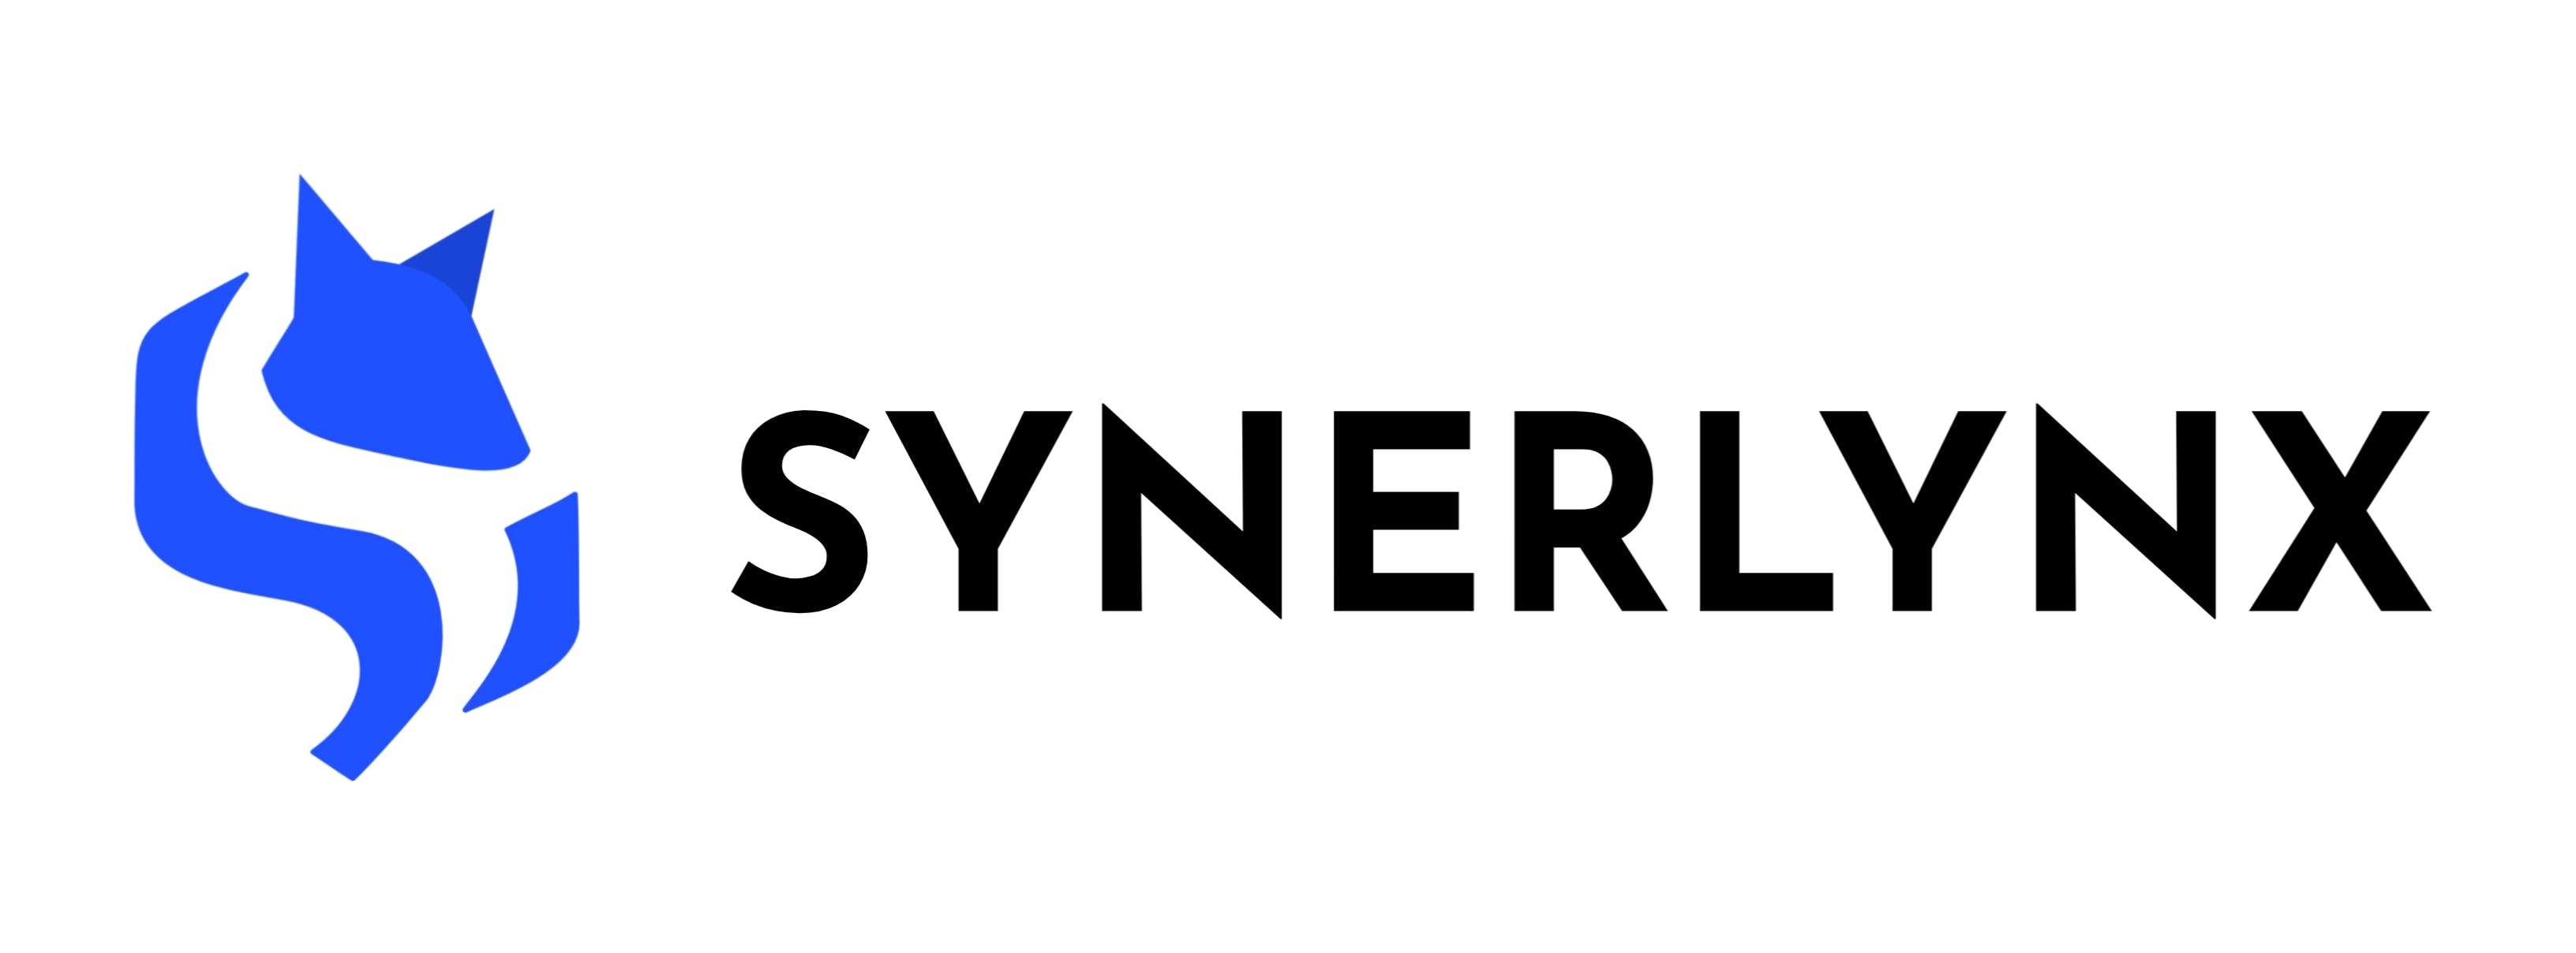 Synerlynx media 1